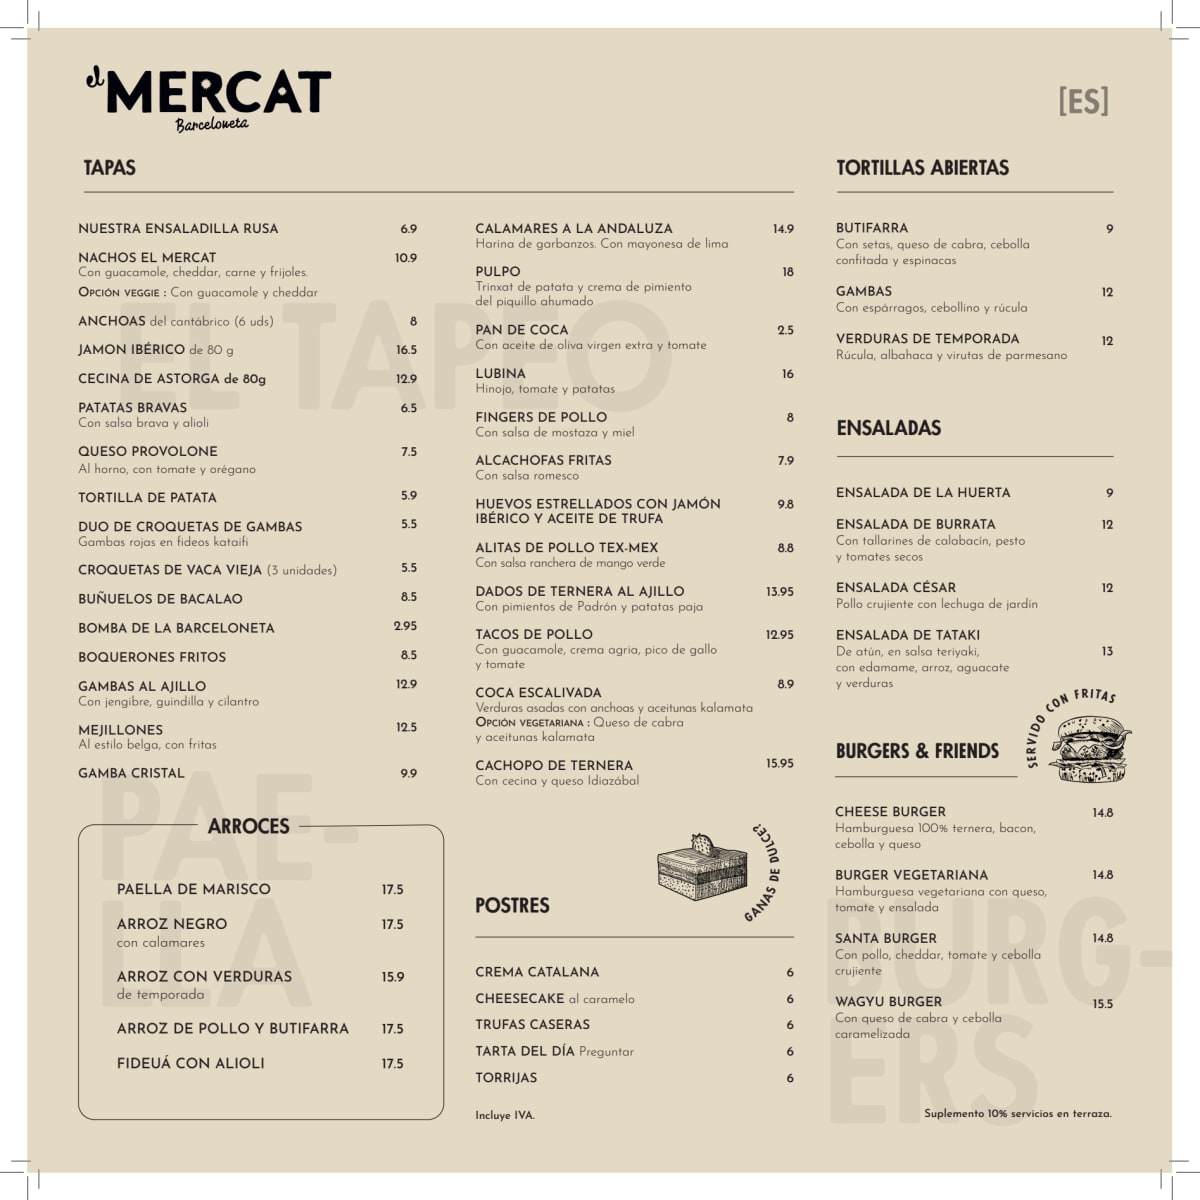 El Mercat Tapas Bar Barceloneta menu